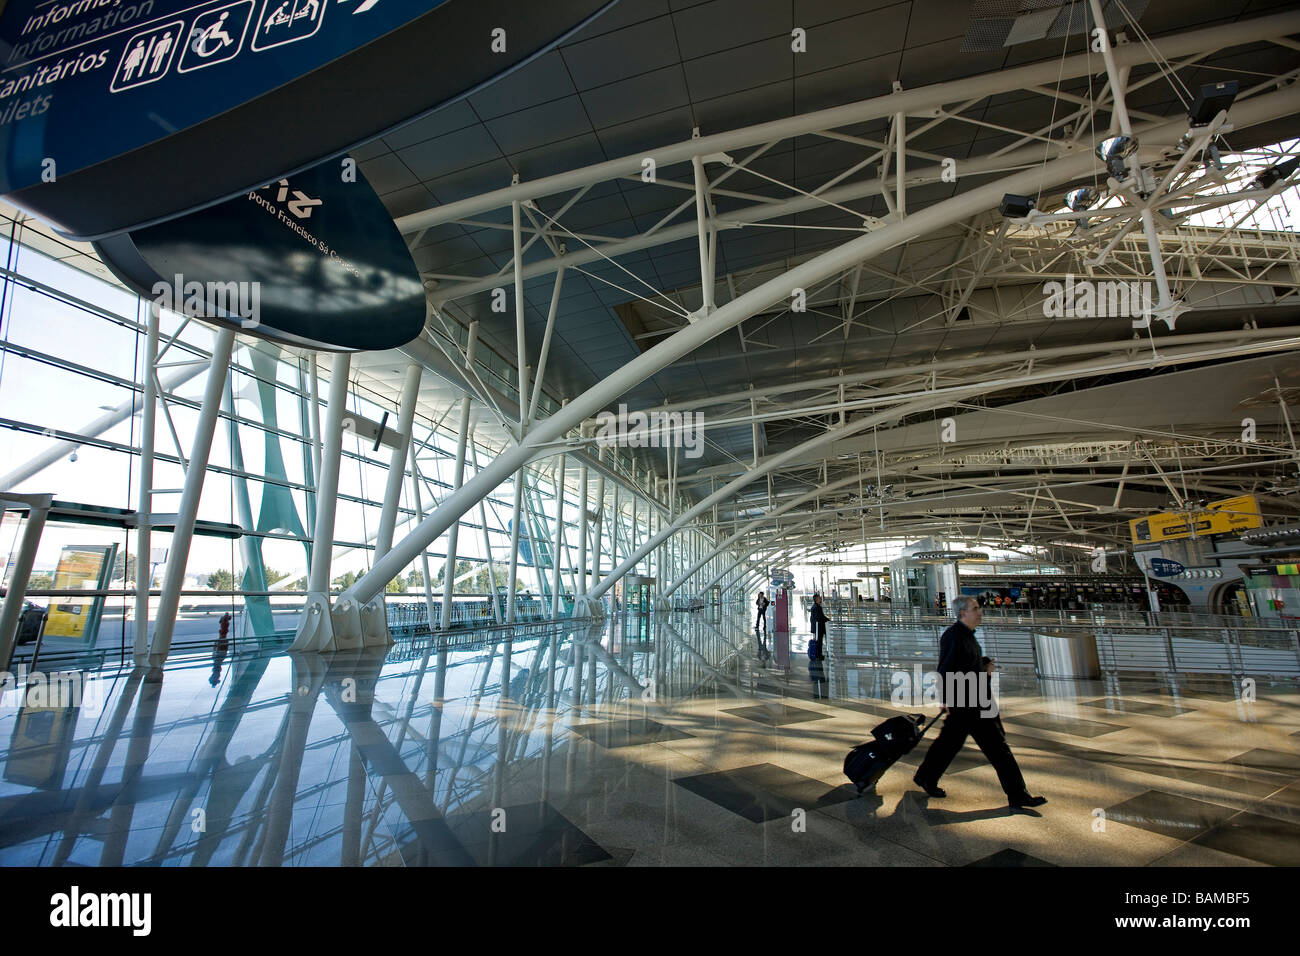 Portugal, Norte region, Porto, airport Stock Photo